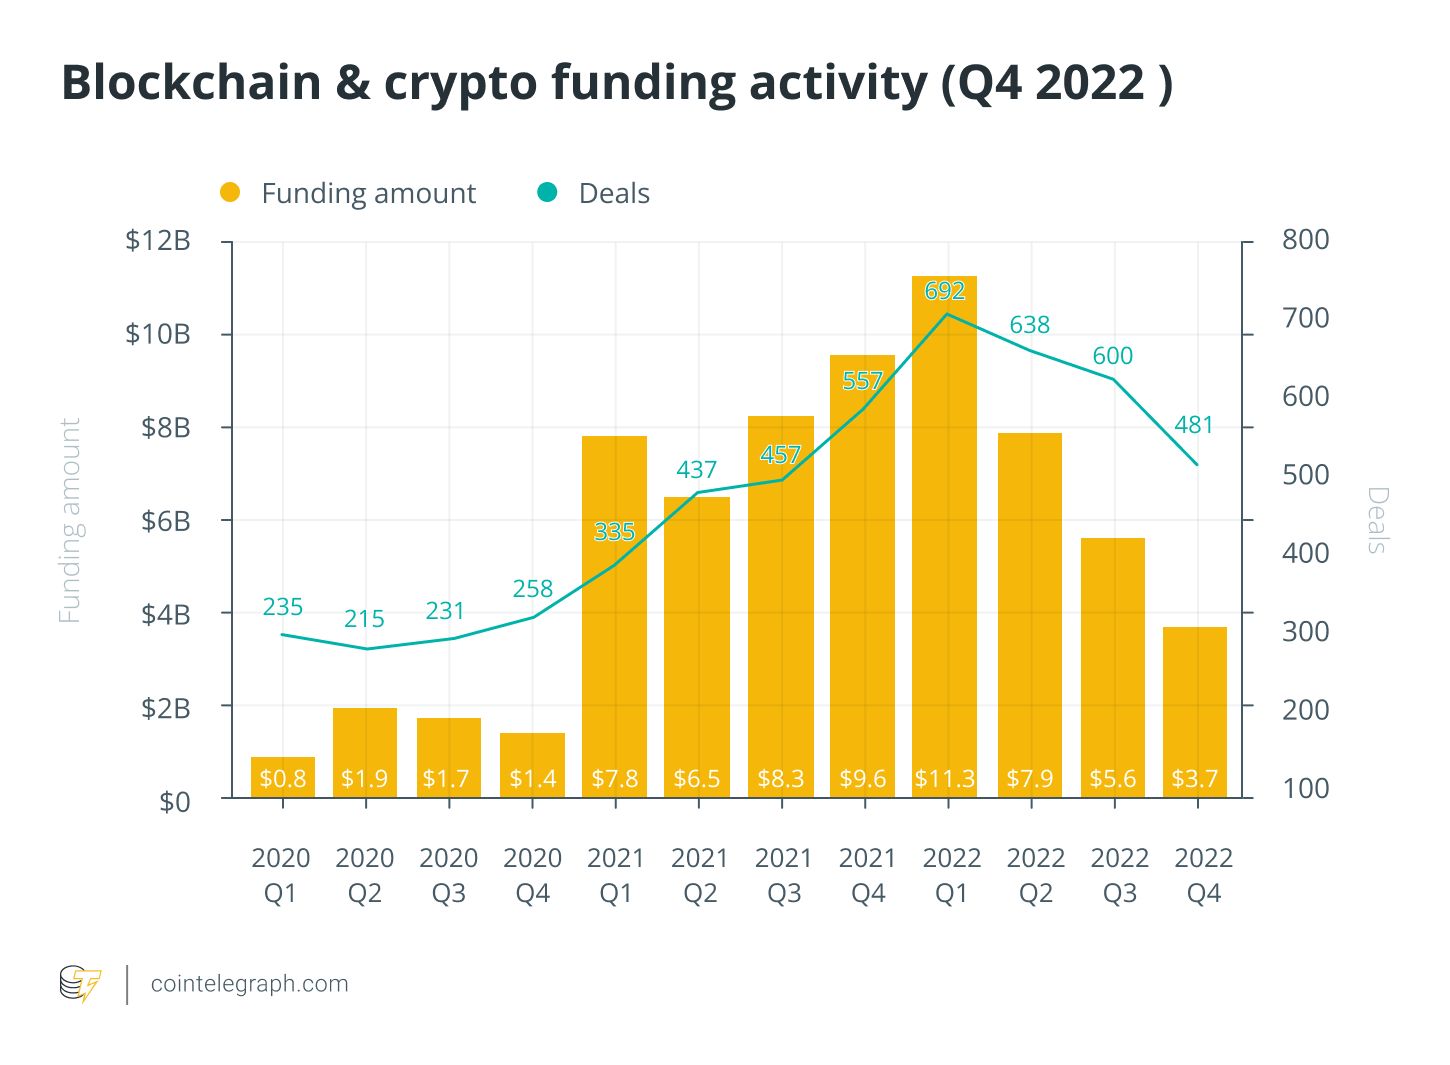 Venture kapitál - přehled financování a uzavřených investic do blockchainových startupů (zdroj: cointelegraph.com).